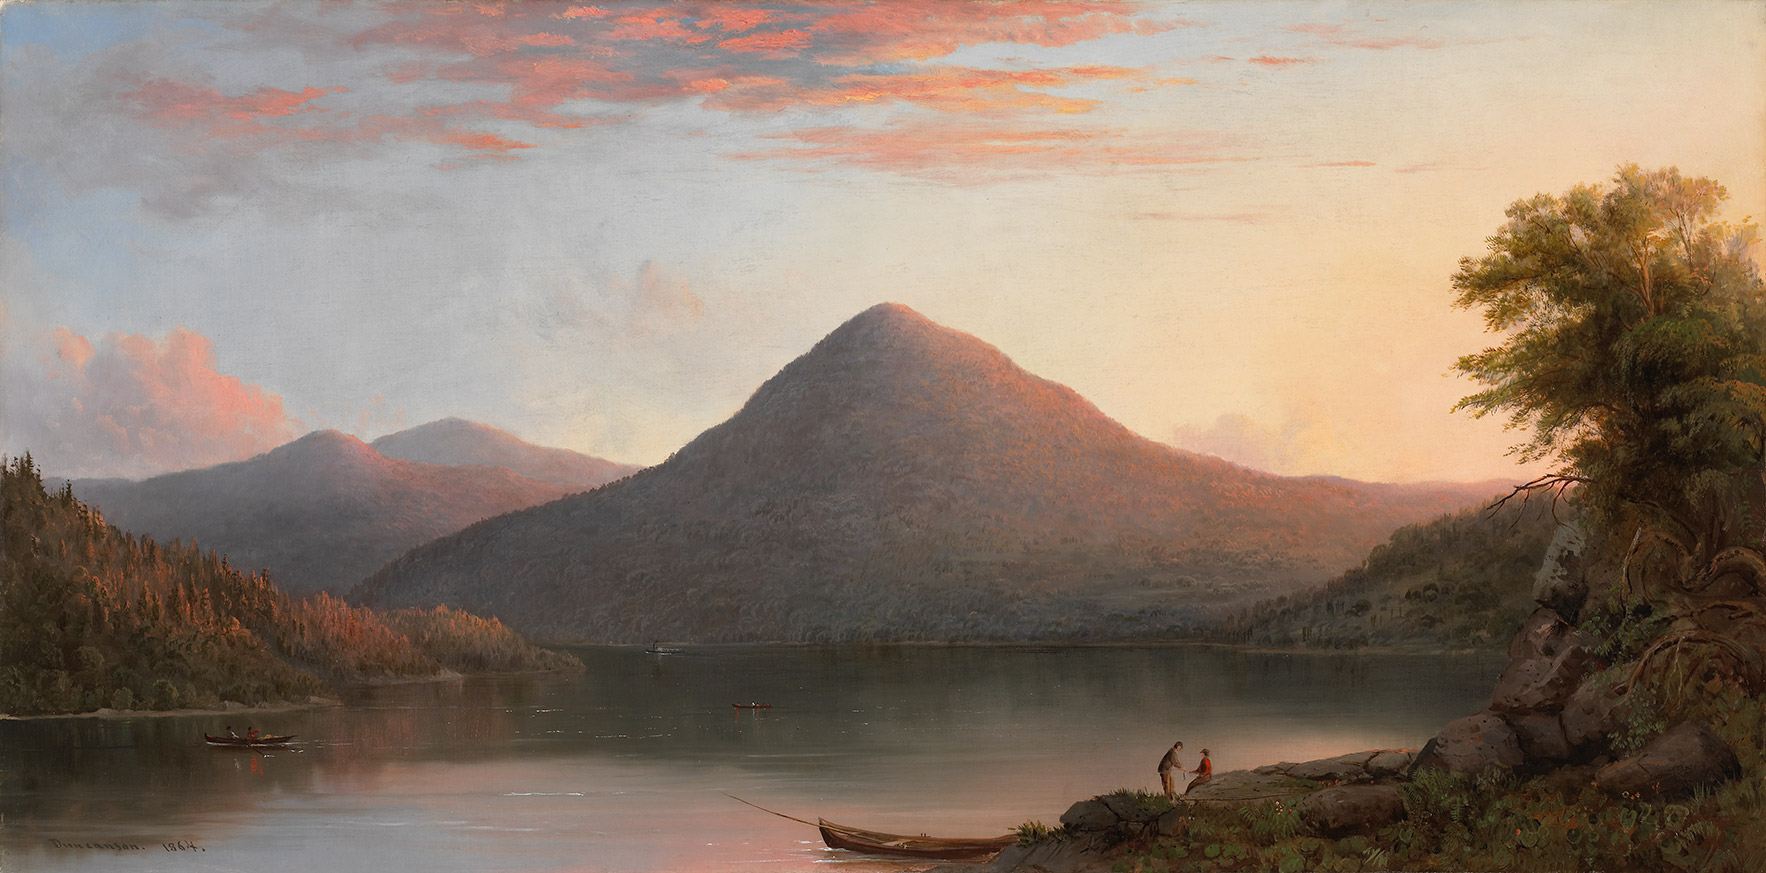 貓頭鷹山 by Robert Duncanson - 1864 年 - 45.7 x 91.7 厘米 